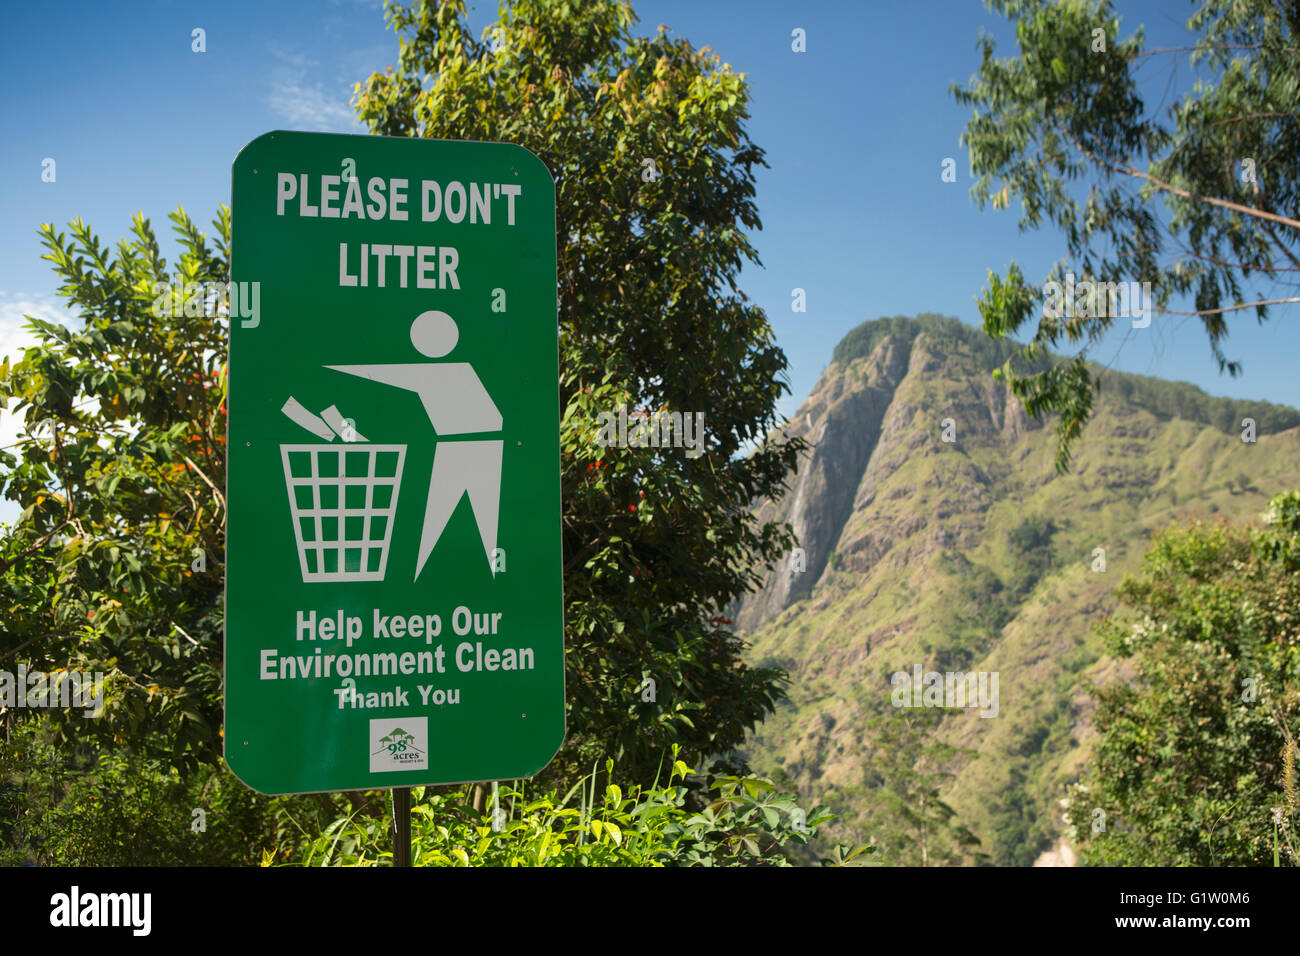 Sri Lanka, Ella, Little Adam's Peak, l'impact environnemental du tourisme. Merci de ne pas signer la litière Banque D'Images